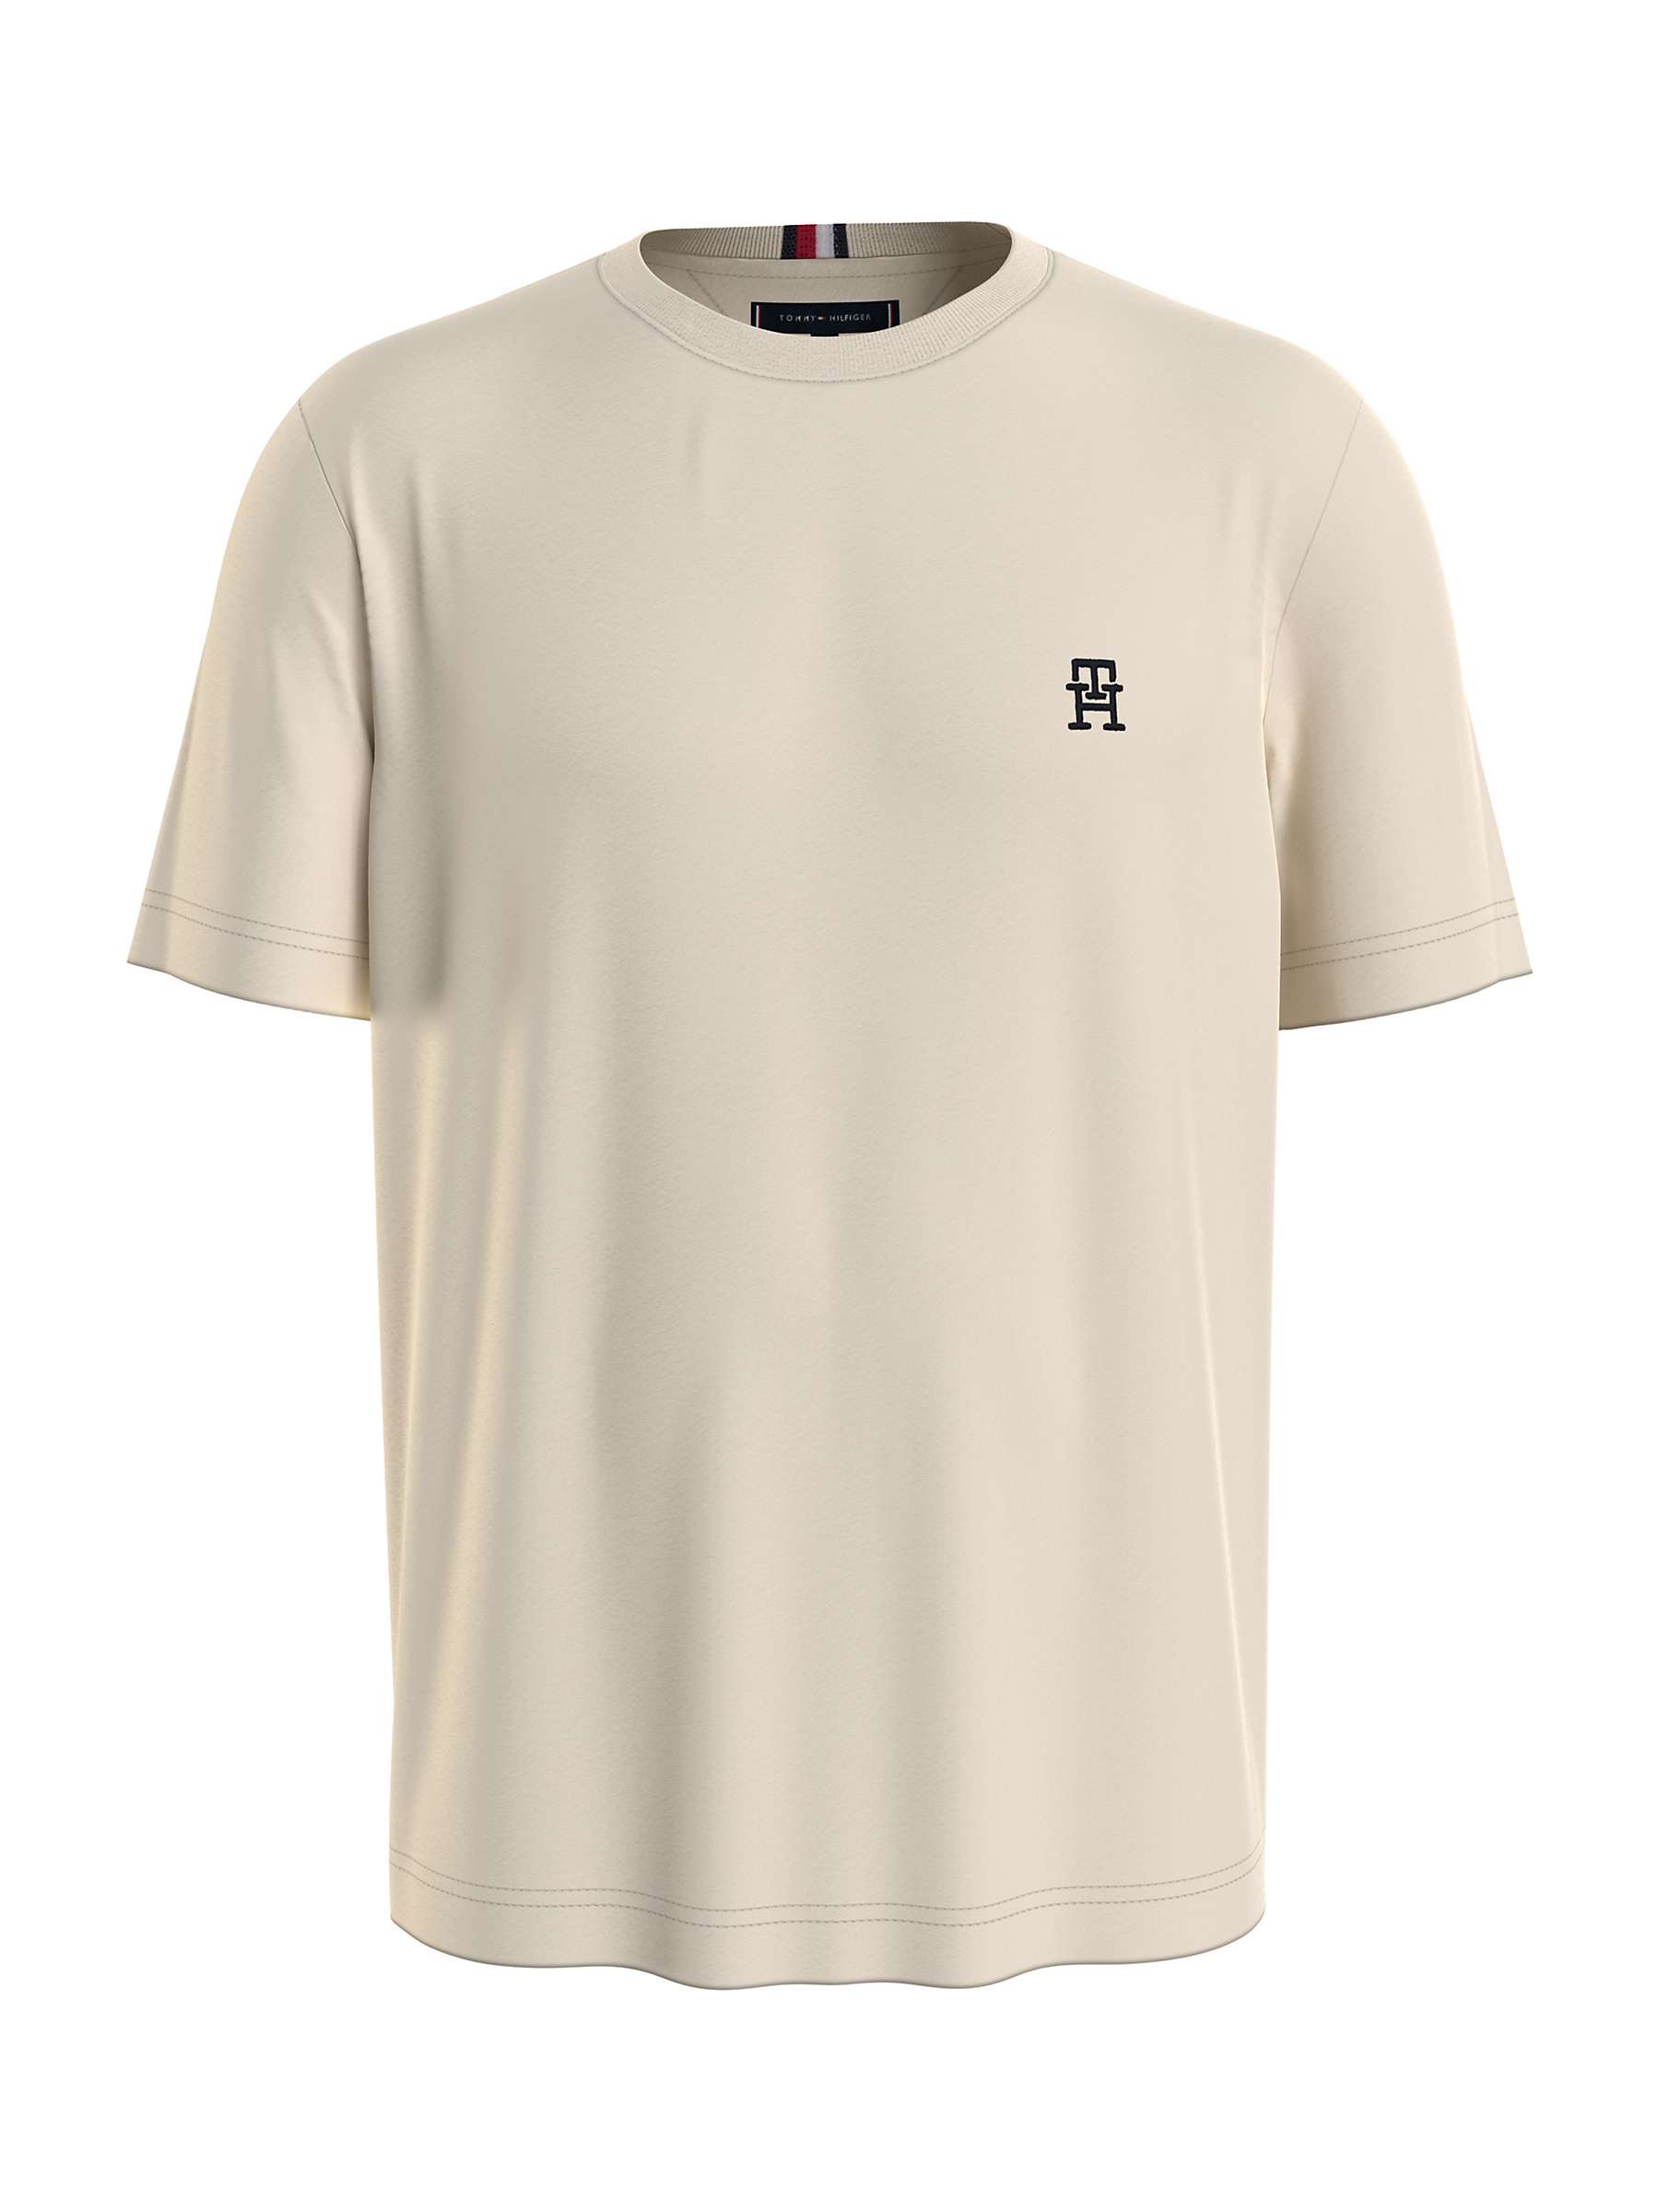 Buy Tommy Hilfiger Monogram T-Shirt, Calico Online at johnlewis.com